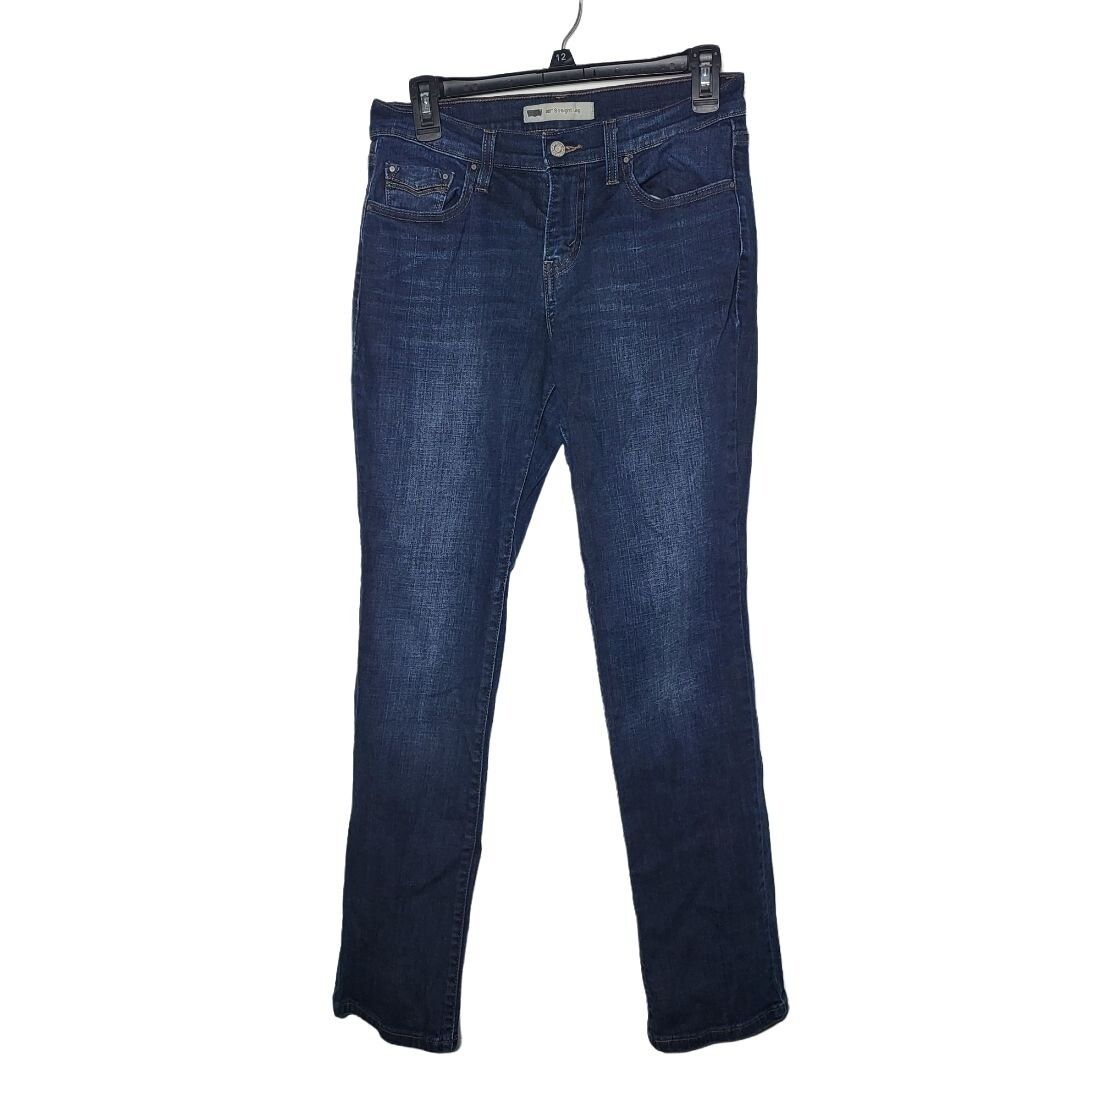 Levi's Levi's 505 Straight Leg Denim Blue Jeans Women's Size 27/30 Size 27" / US 4 / IT 40 - 1 Preview